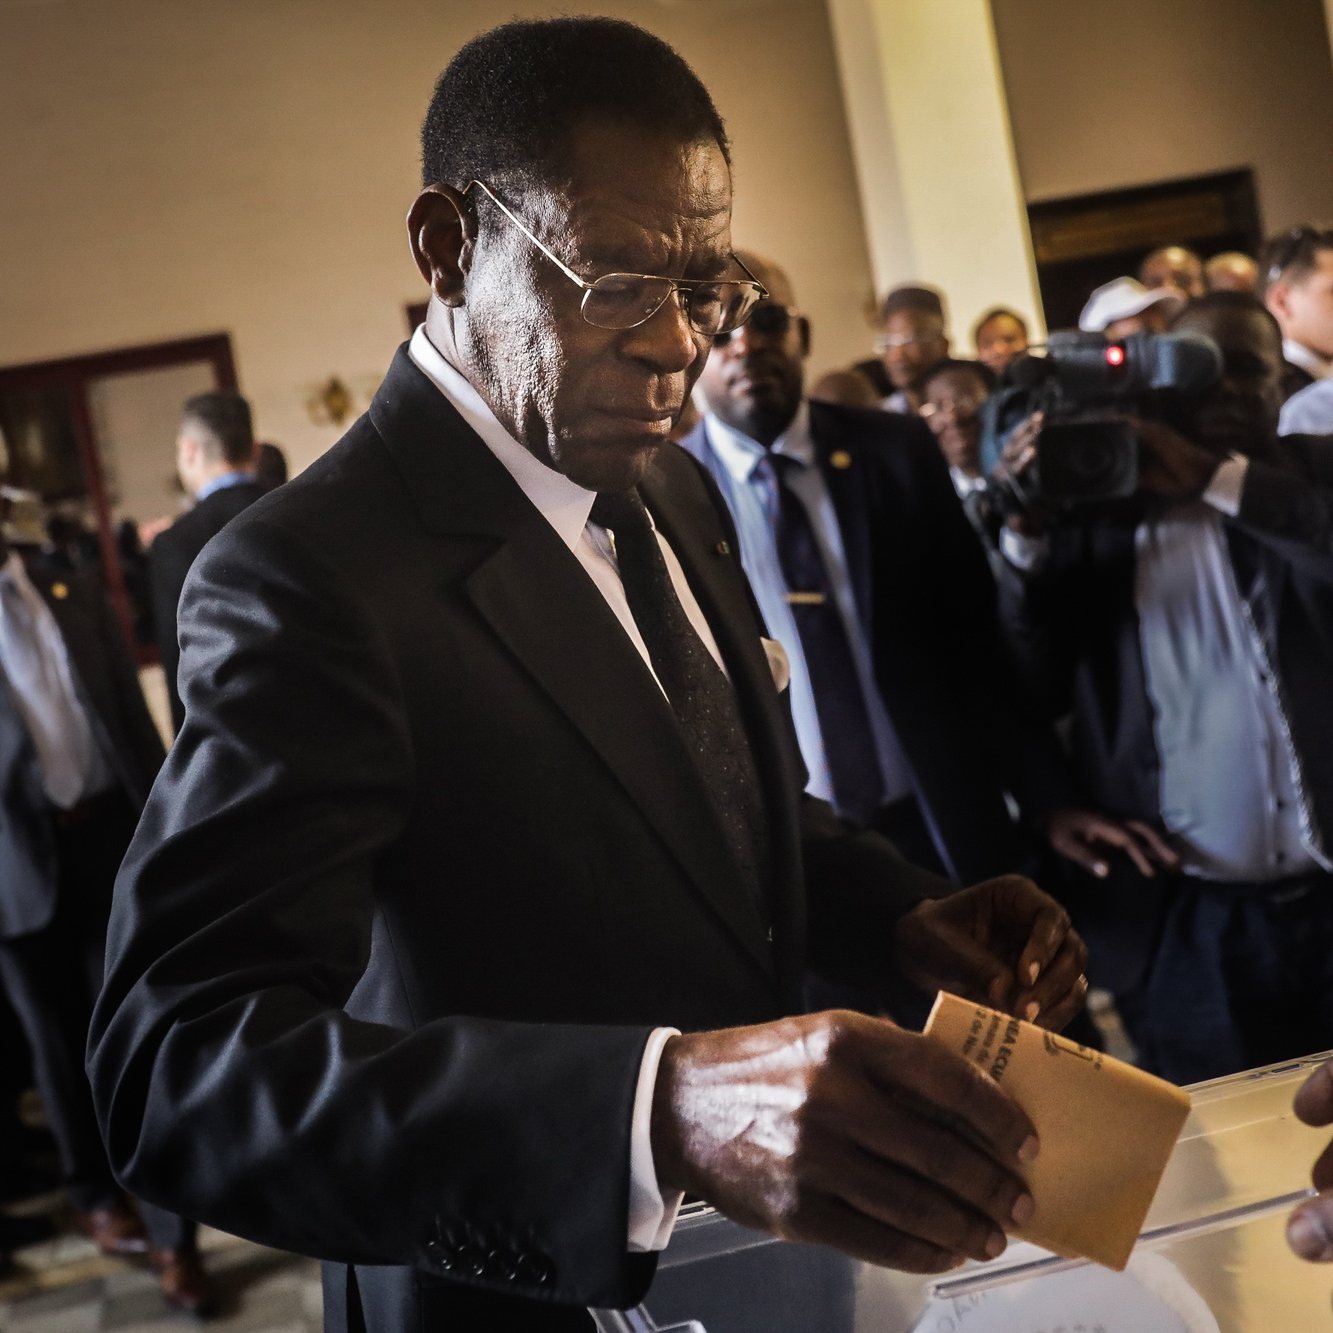 O Presidente da Guiné-Equatorial Teodoro Obiang exerce o seu direito de voto nas Eleições Legislativas e Autárquicas, em Malabo, Guiné Equatorial, 12 de novembro de 2017.
A Guiné Equatorial contava com 1.220.000 habitantes em 2016, segundo dados do Banco Mundial. O país é dirigido desde agosto de 1979 por Teodoro Obiang, que detém o recorde de longevidade no poder em África. MÁRIO CRUZ/LUSA